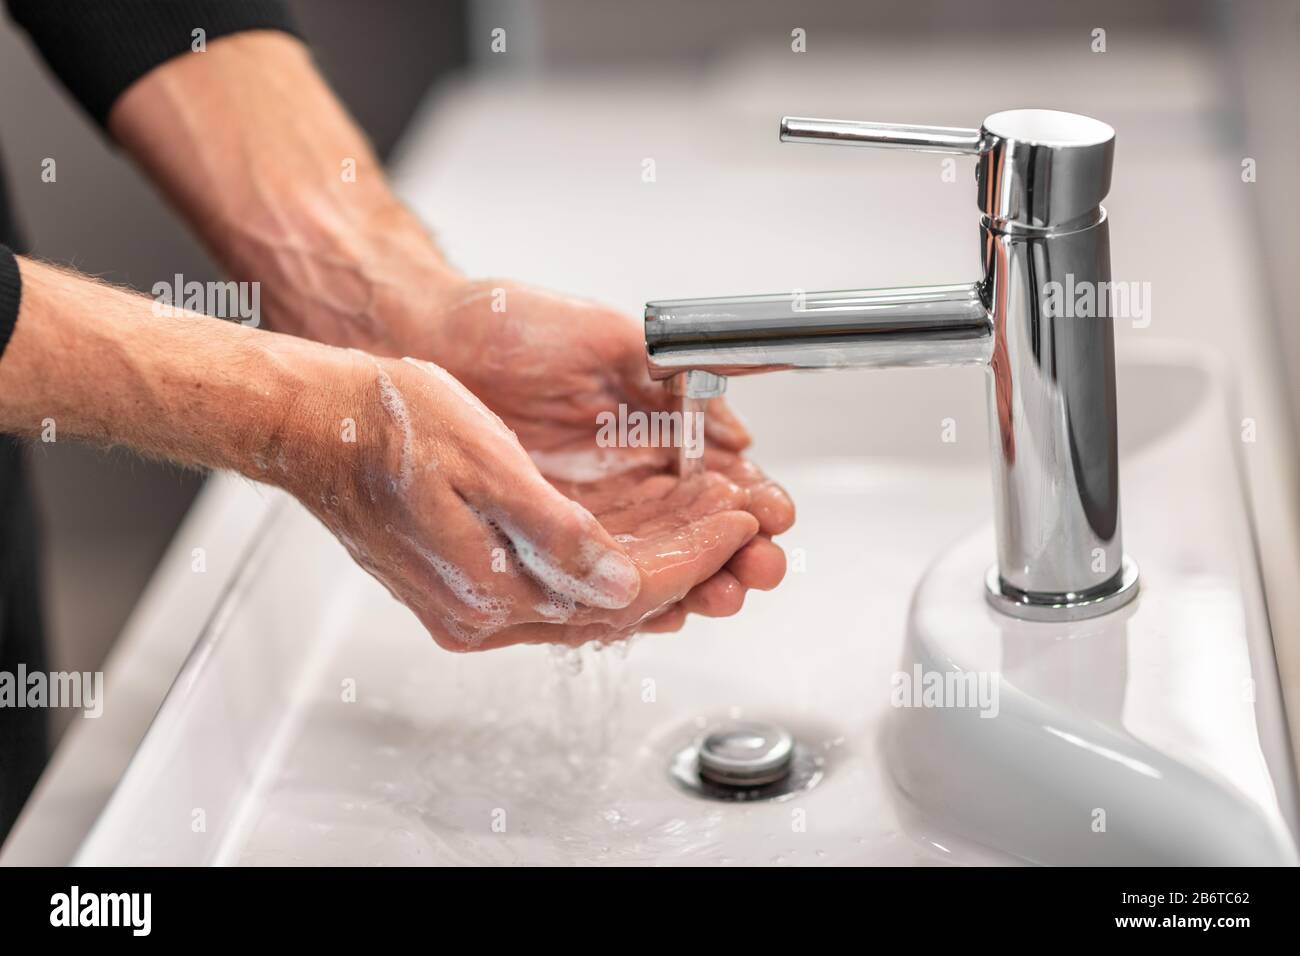 Laver les mains homme rincer le savon avec de l'eau courante à l'évier, Coronavirus prévention hygiène des mains. Protection contre la pandémie du virus Corona en nettoyant fréquemment les mains. Banque D'Images